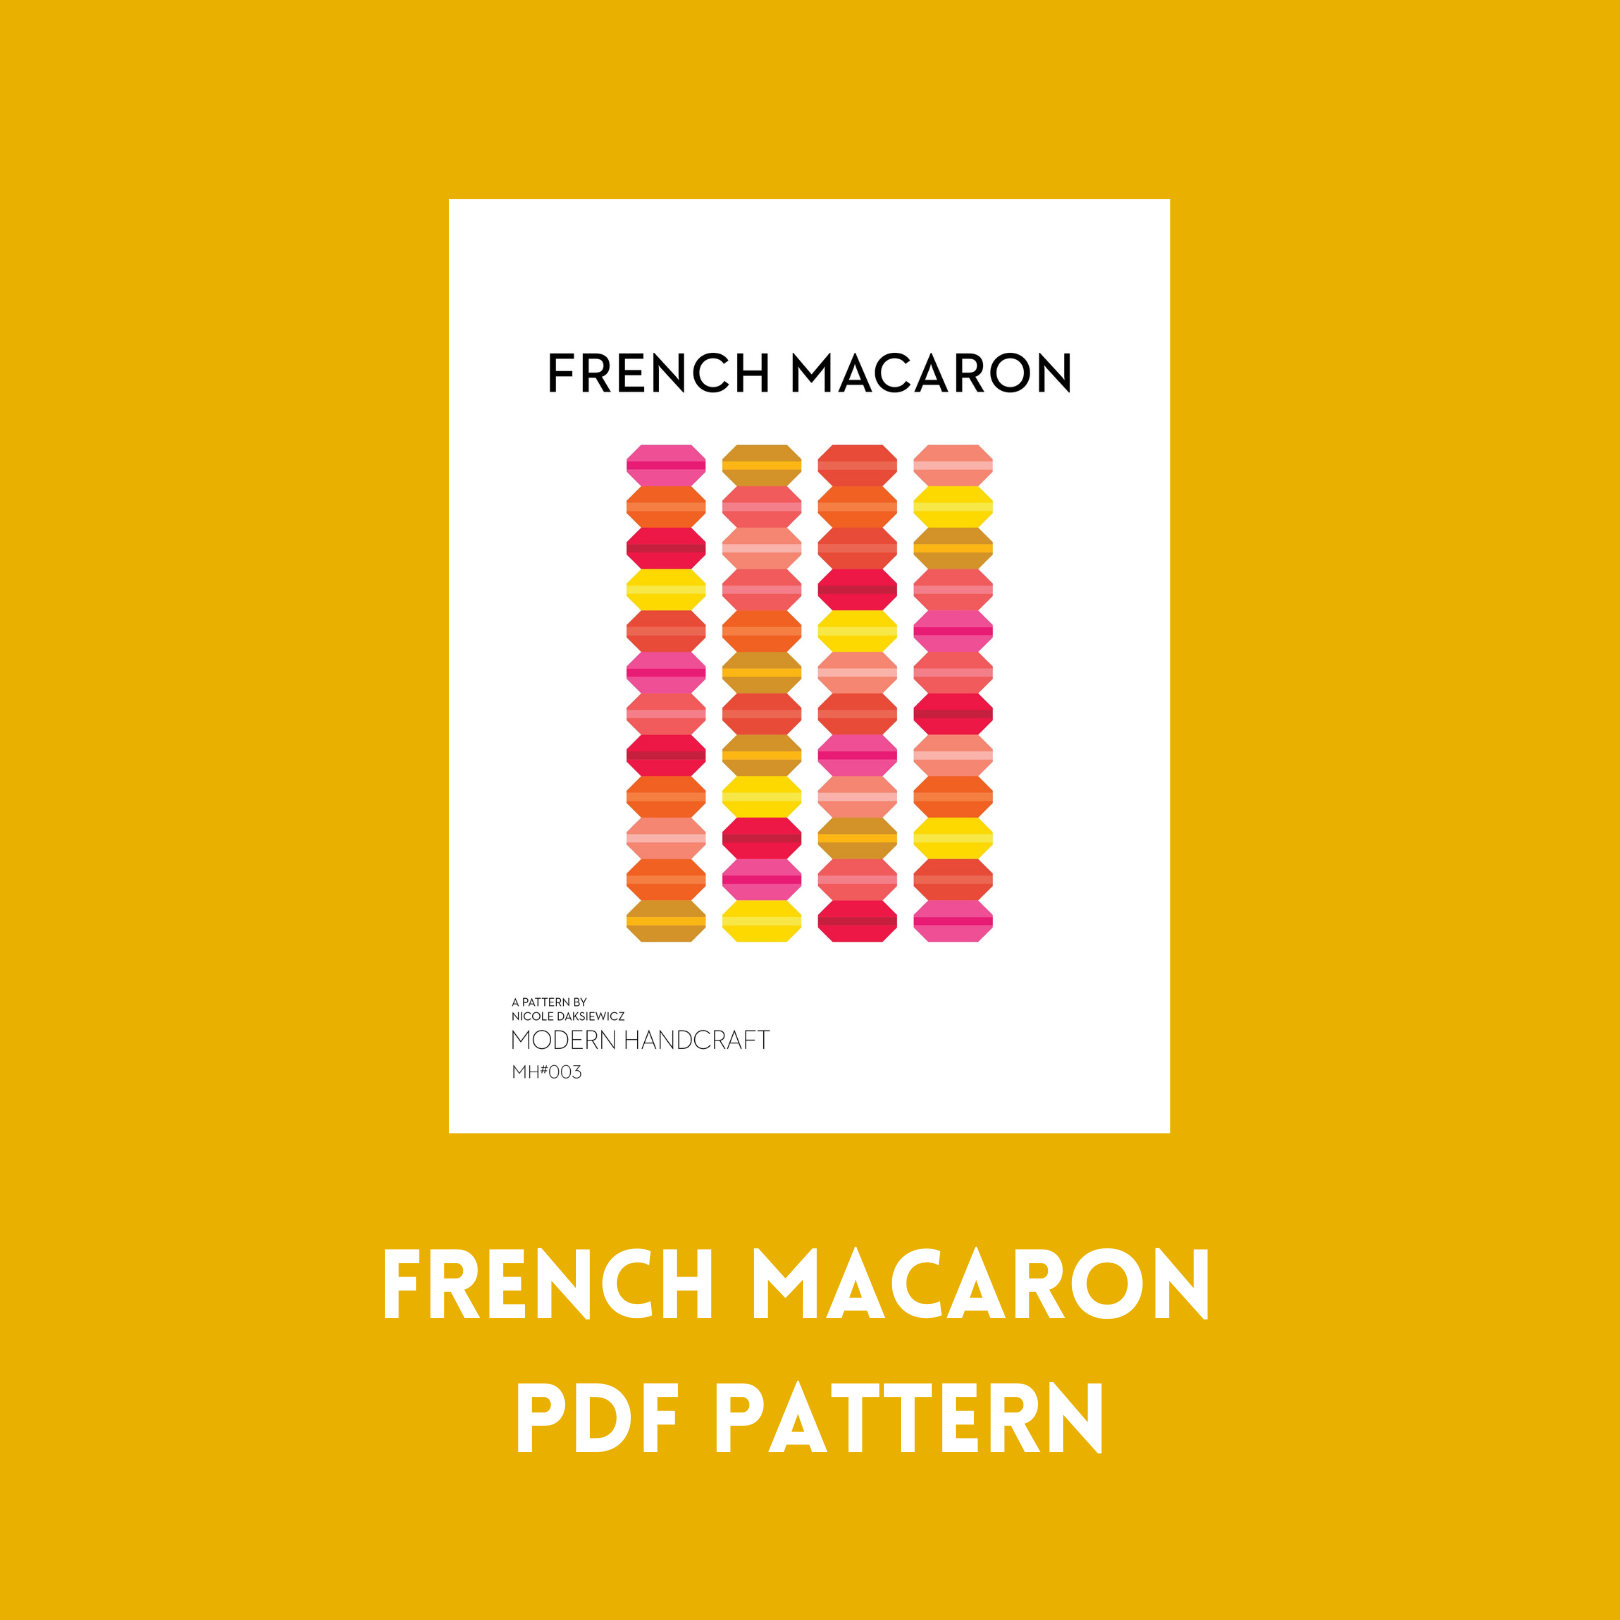 French Macaron Quilt / Camellia Mock up - Modernhandcraft.com